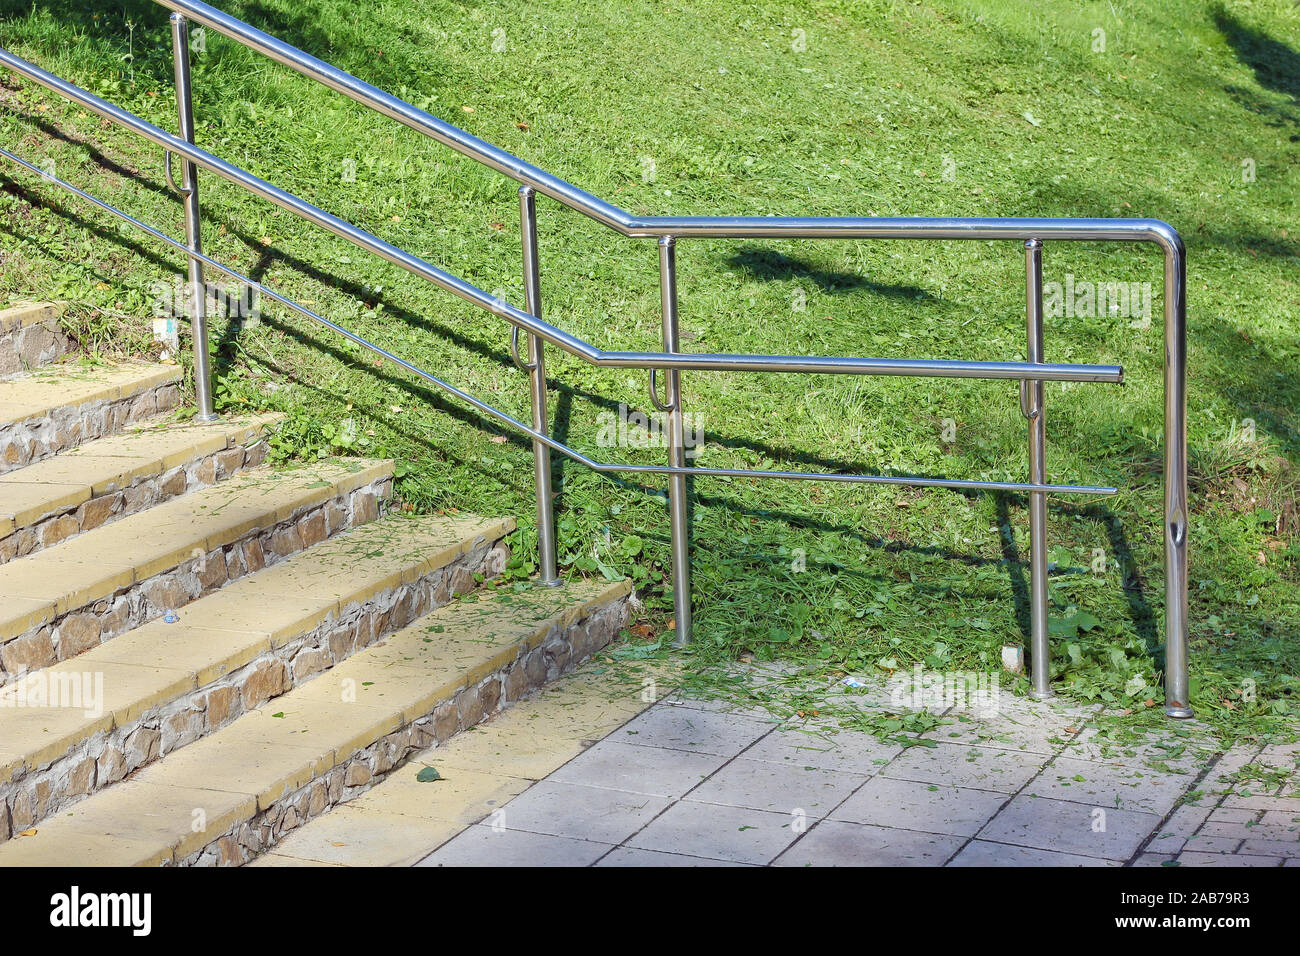 Escalera De Piedra Con Barandillas De Acero Inoxidable En El Parque.  Ascenso Por Una Pendiente Empinada A Lo Largo De Las Escaleras. Fotos,  retratos, imágenes y fotografía de archivo libres de derecho.